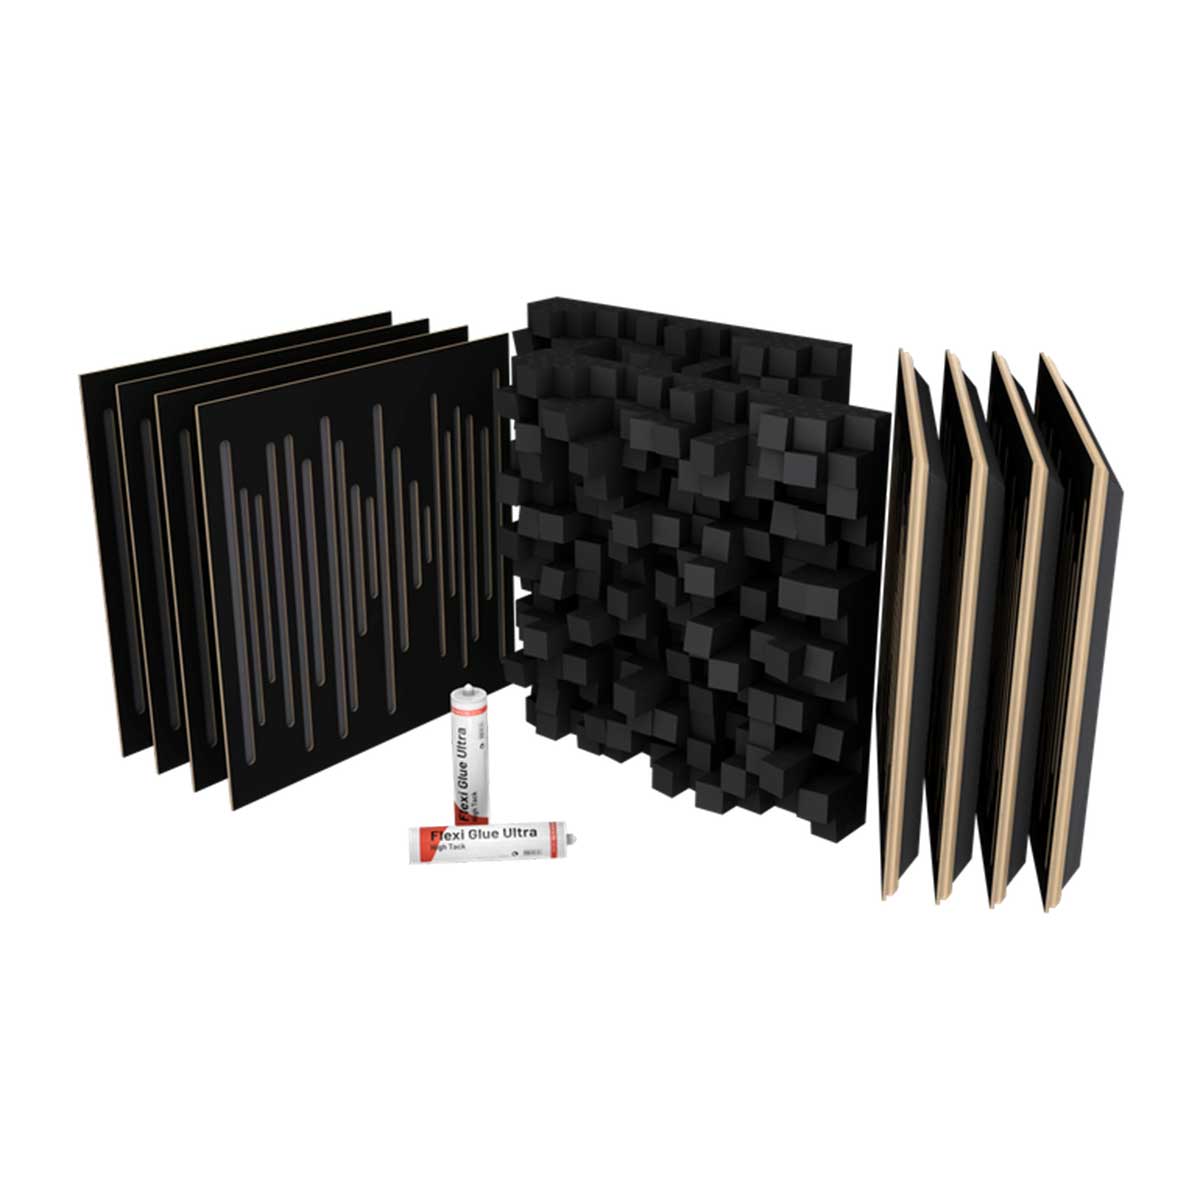 VicStudio Box Acoustic Kit for Project Studios - Black Matte